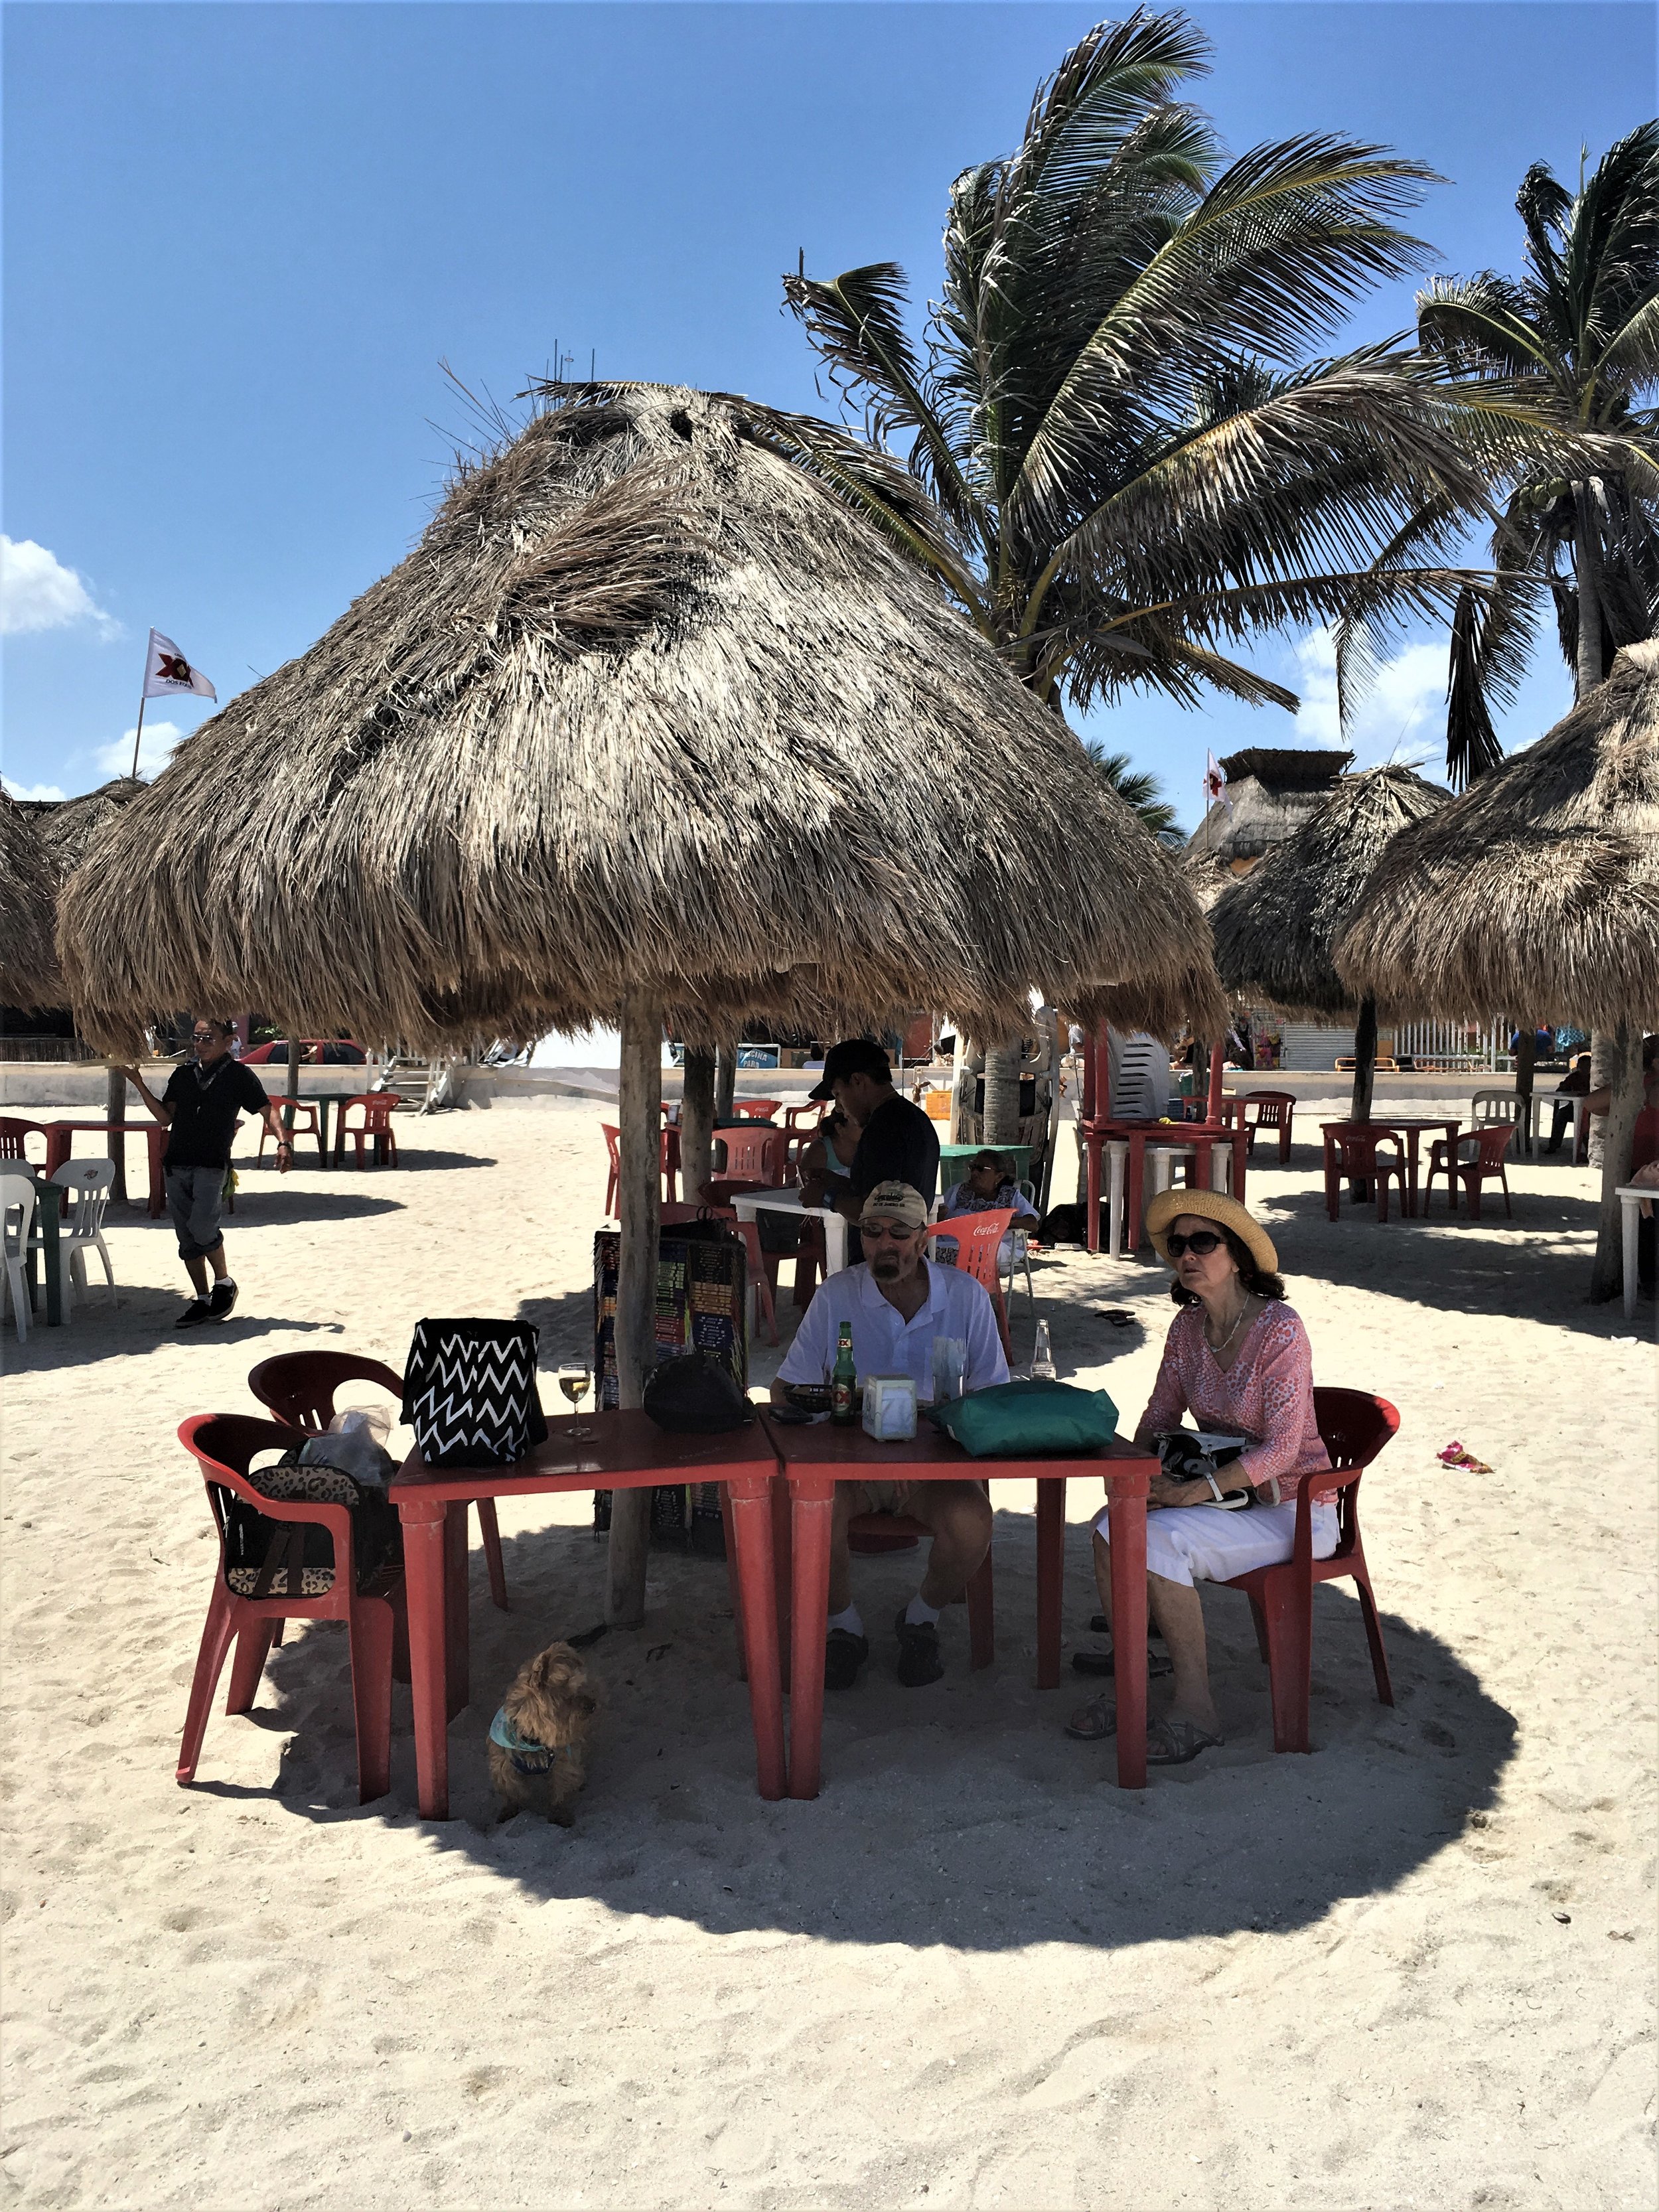 Umbrella on the beach in Progreso, Mexico